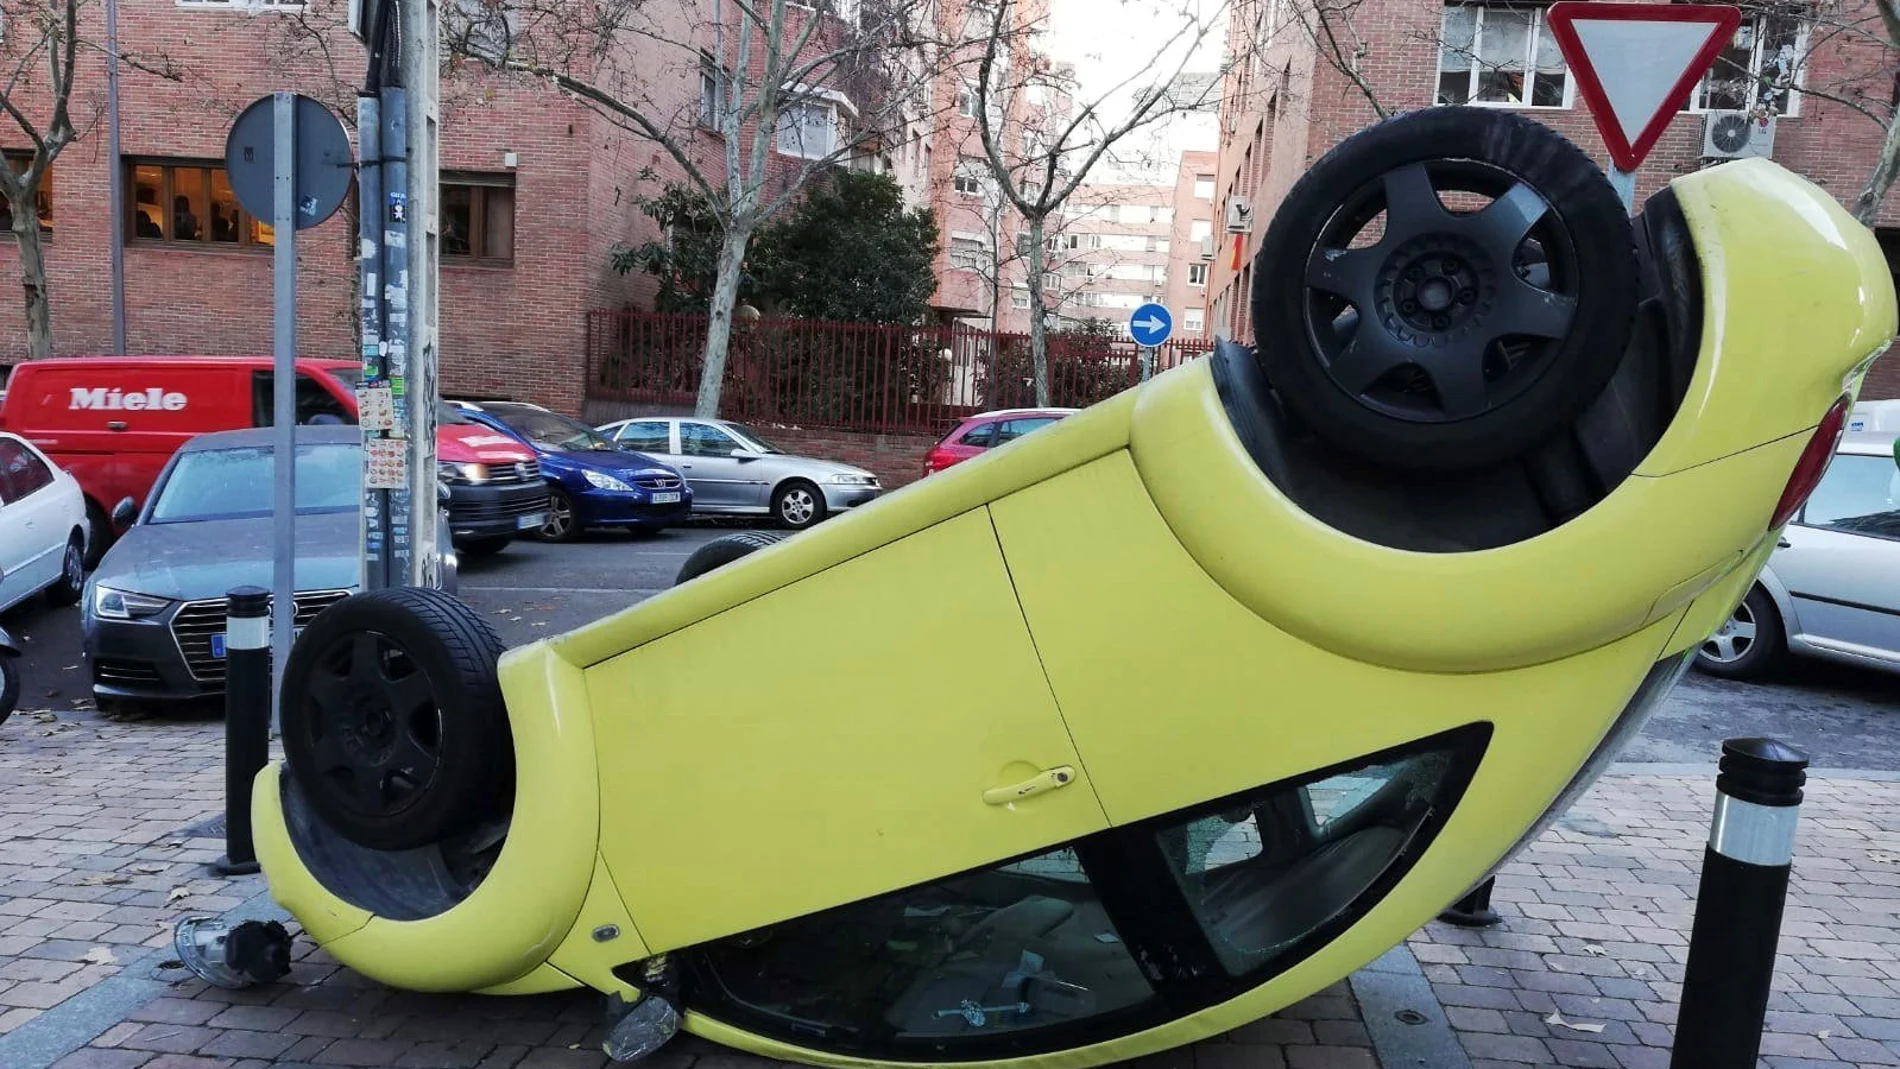 El coche, un Volkswagen Escarabajo de color amarillo, ha chocado contra un bolardo de la calle de Jaén y ha dado una vuelta de campana.